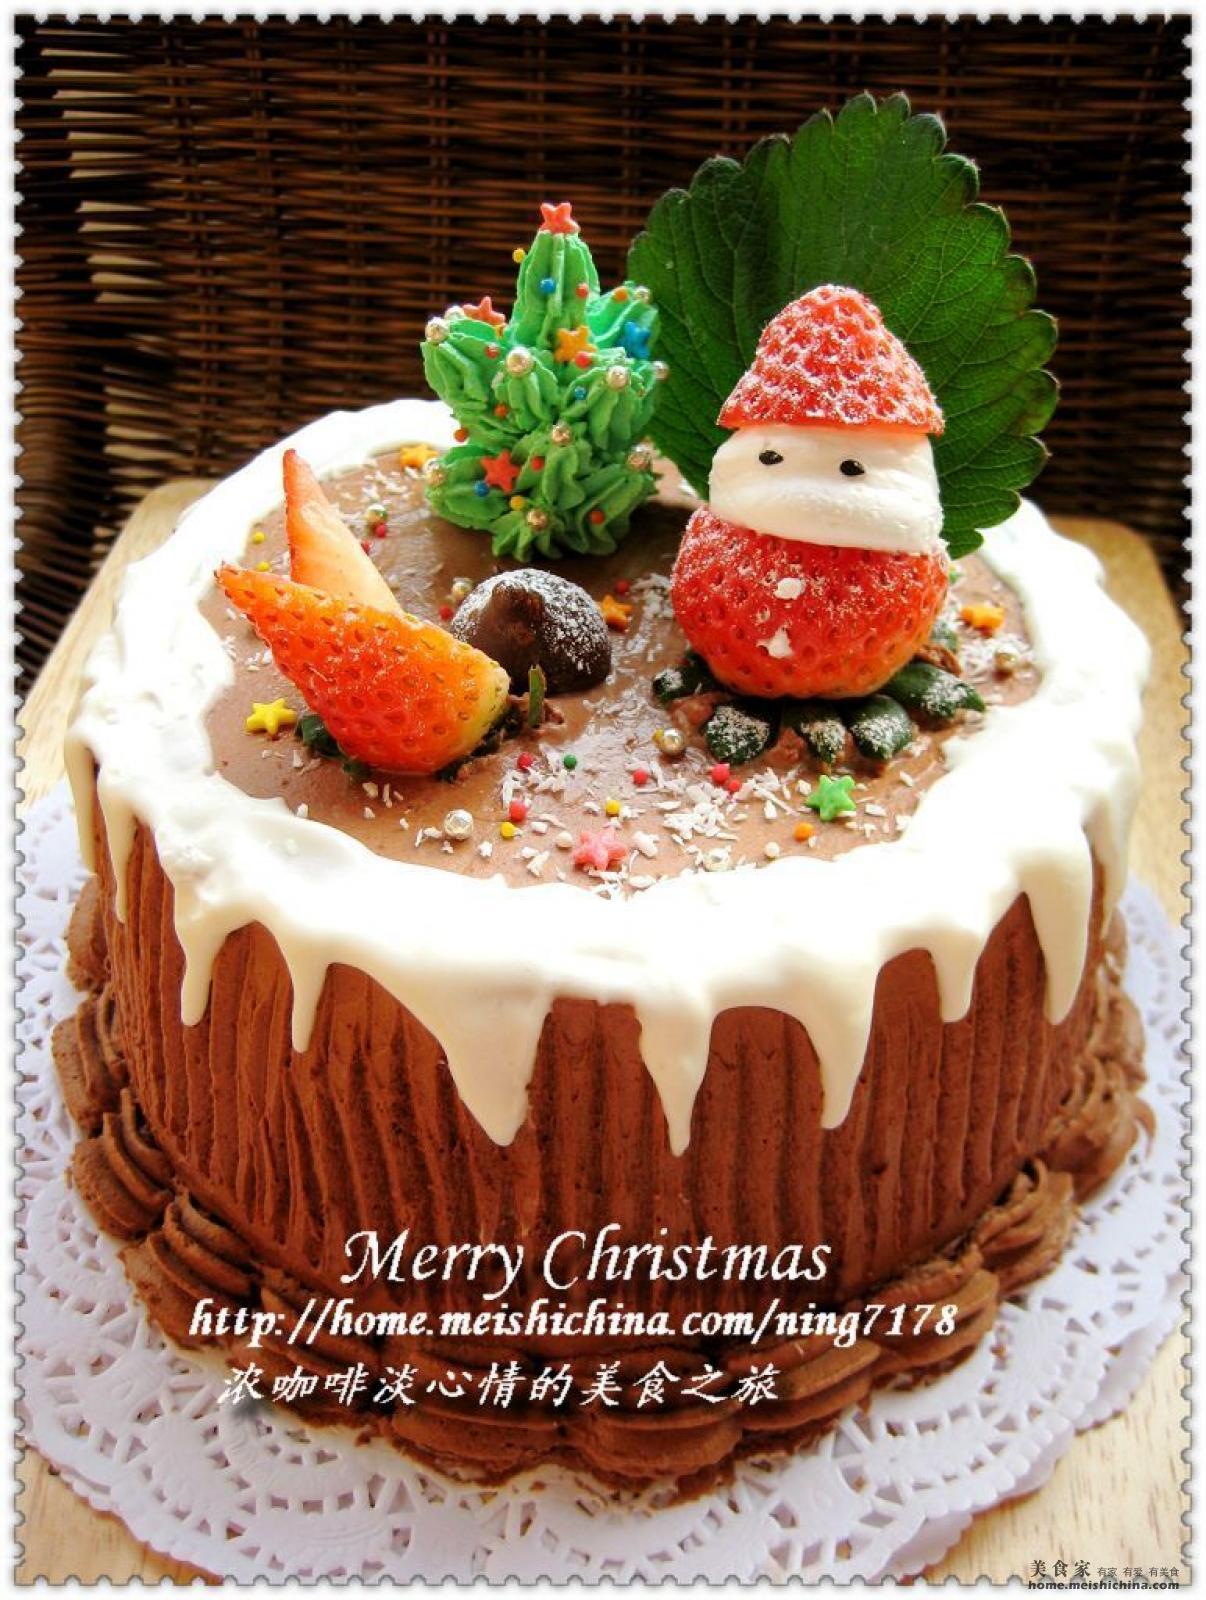 圣诞老人杯子蛋糕怎么做_圣诞老人杯子蛋糕的做法_A芈菇凉_豆果美食